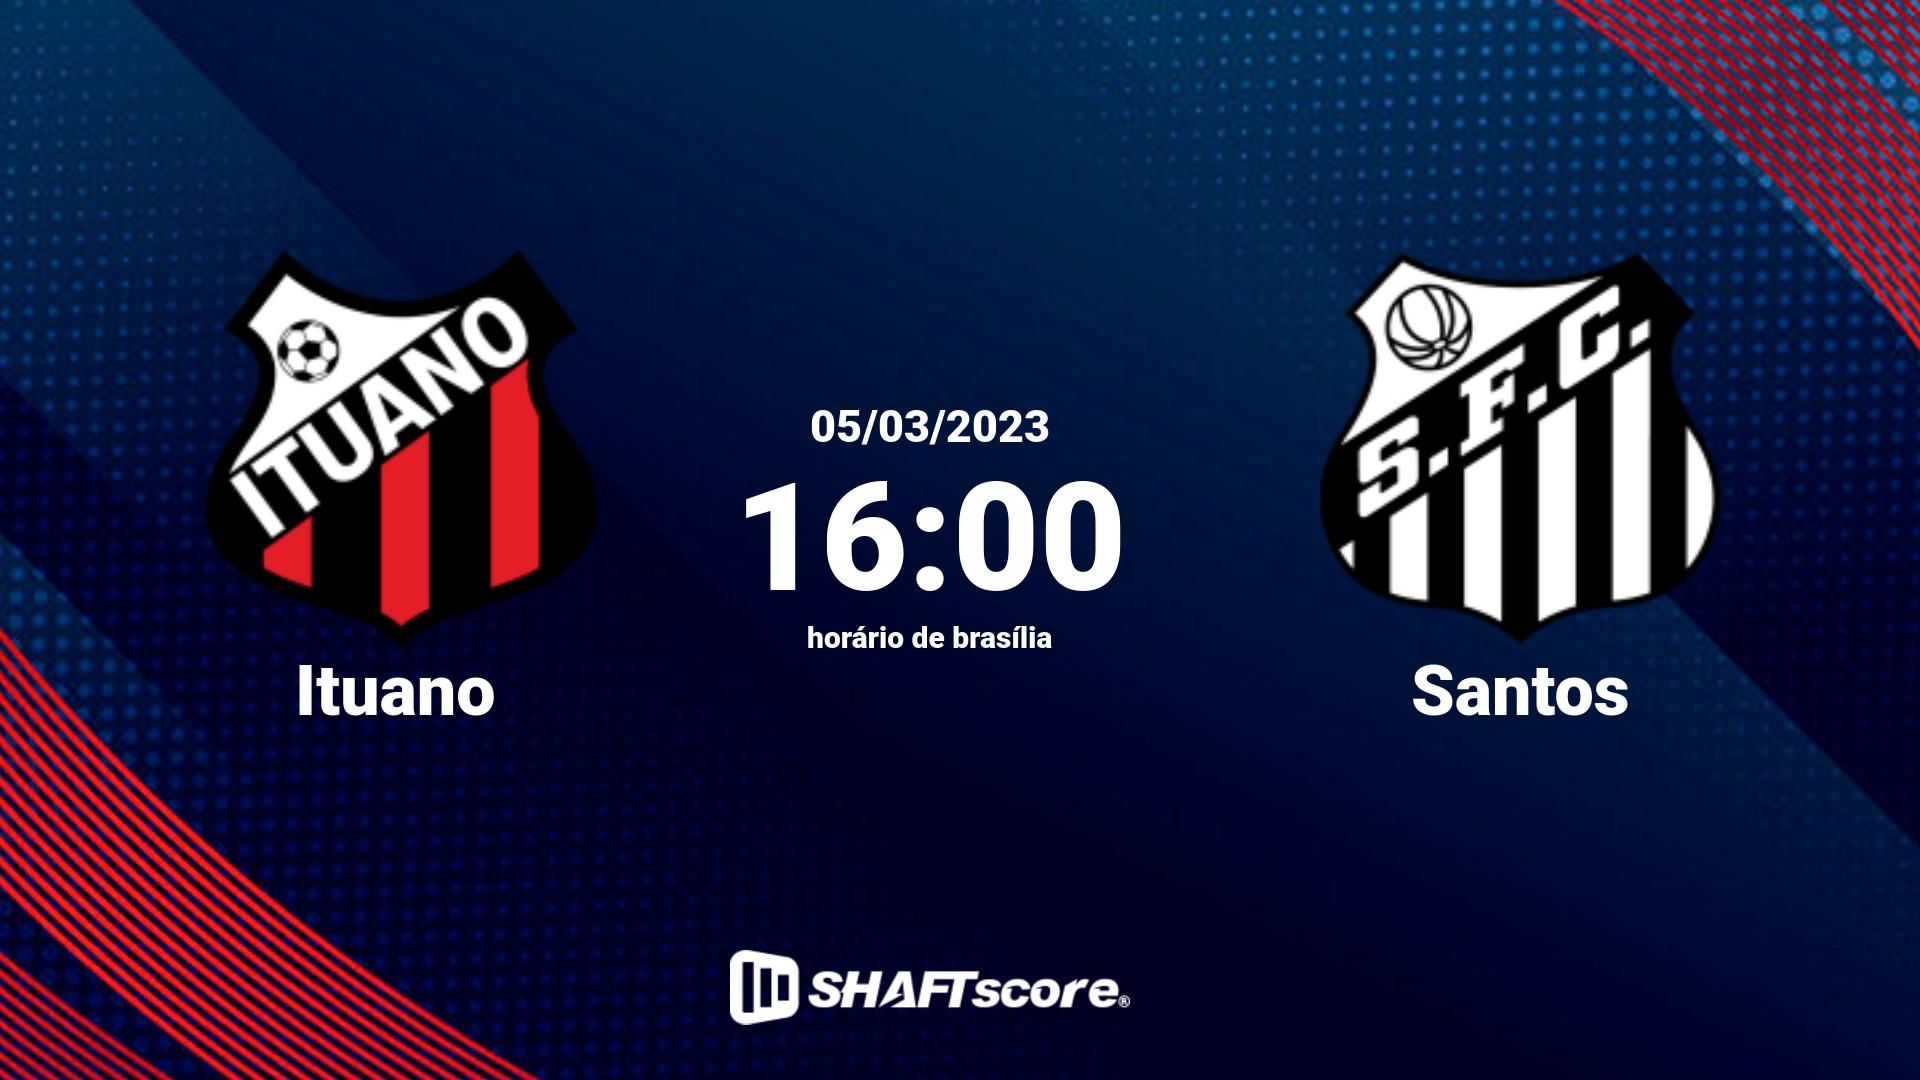 Estatísticas do jogo Ituano vs Santos 05.03 16:00